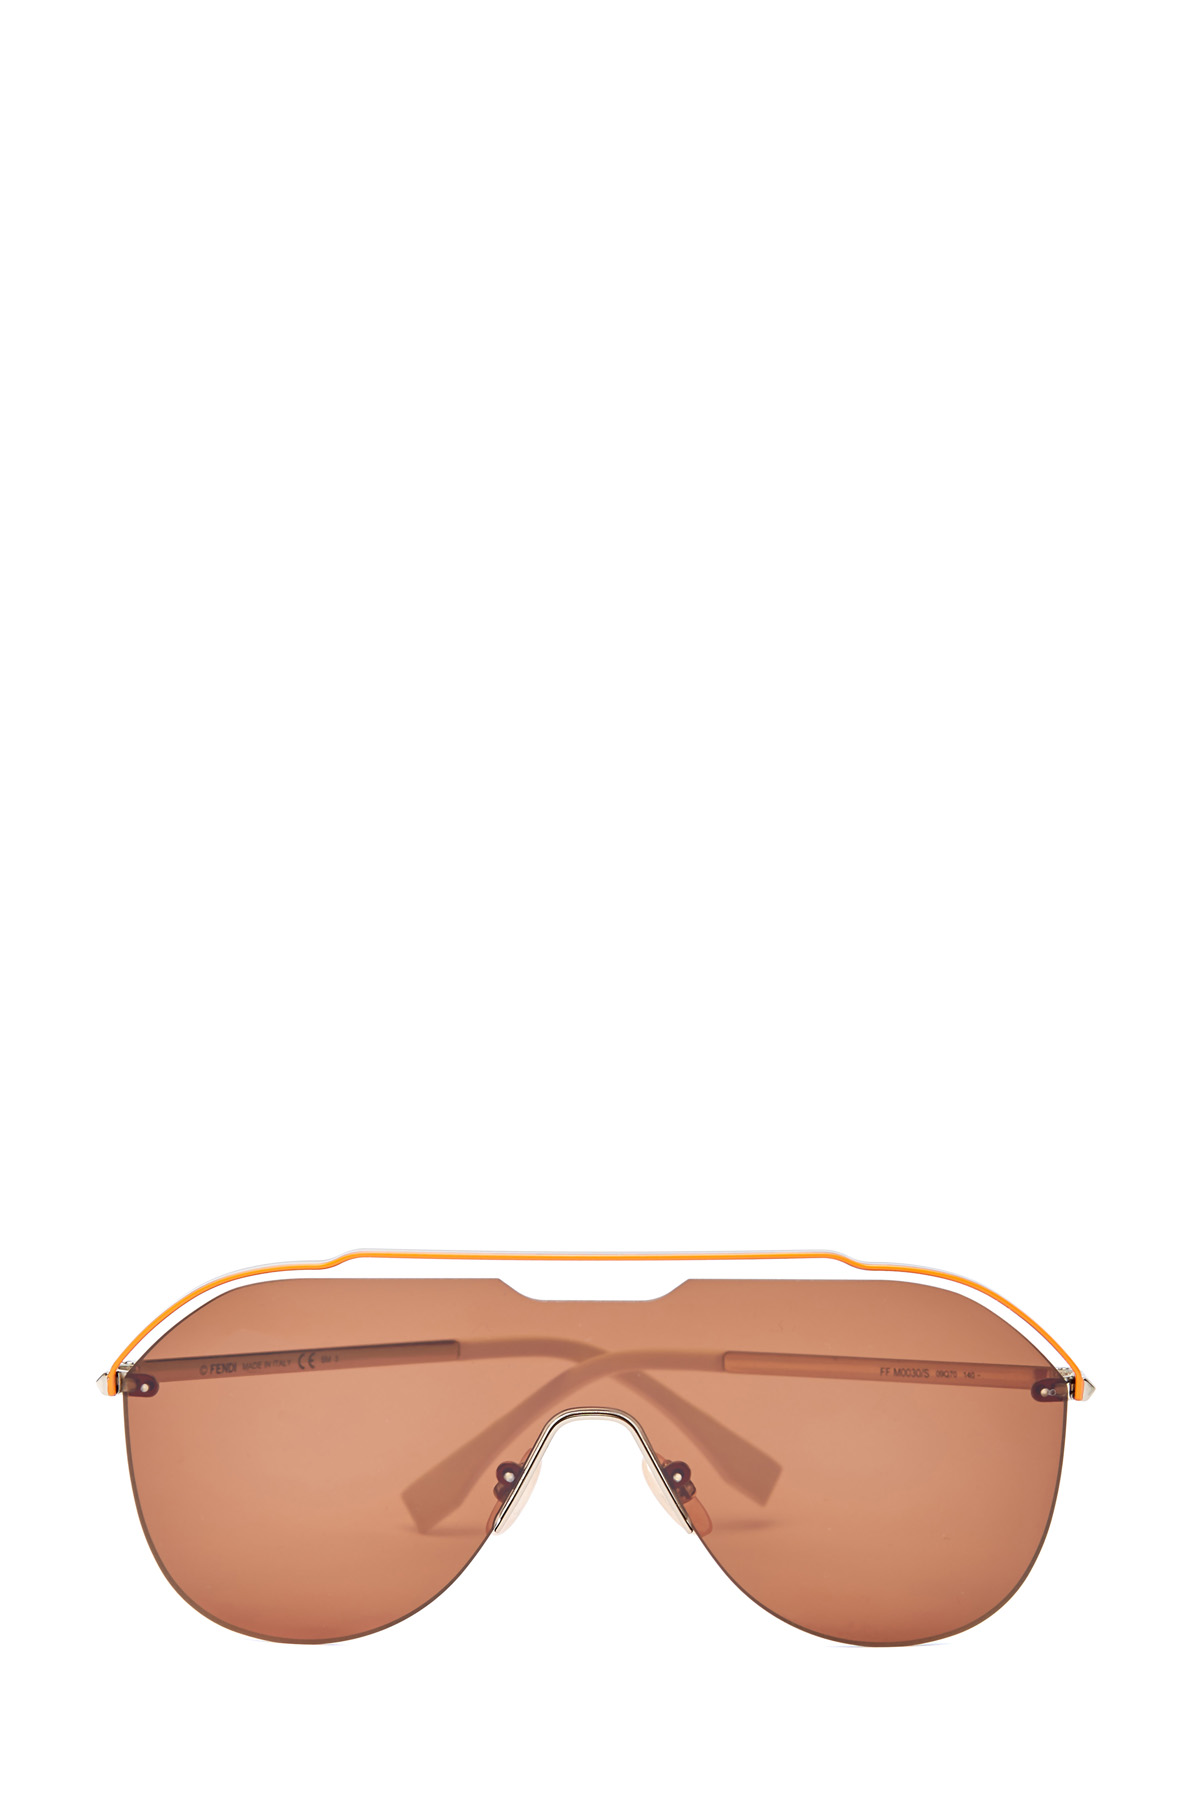 Очки-маска в графичной металлической оправе авиатор FENDI (sunglasses), цвет коричневый, размер XS;S - фото 1